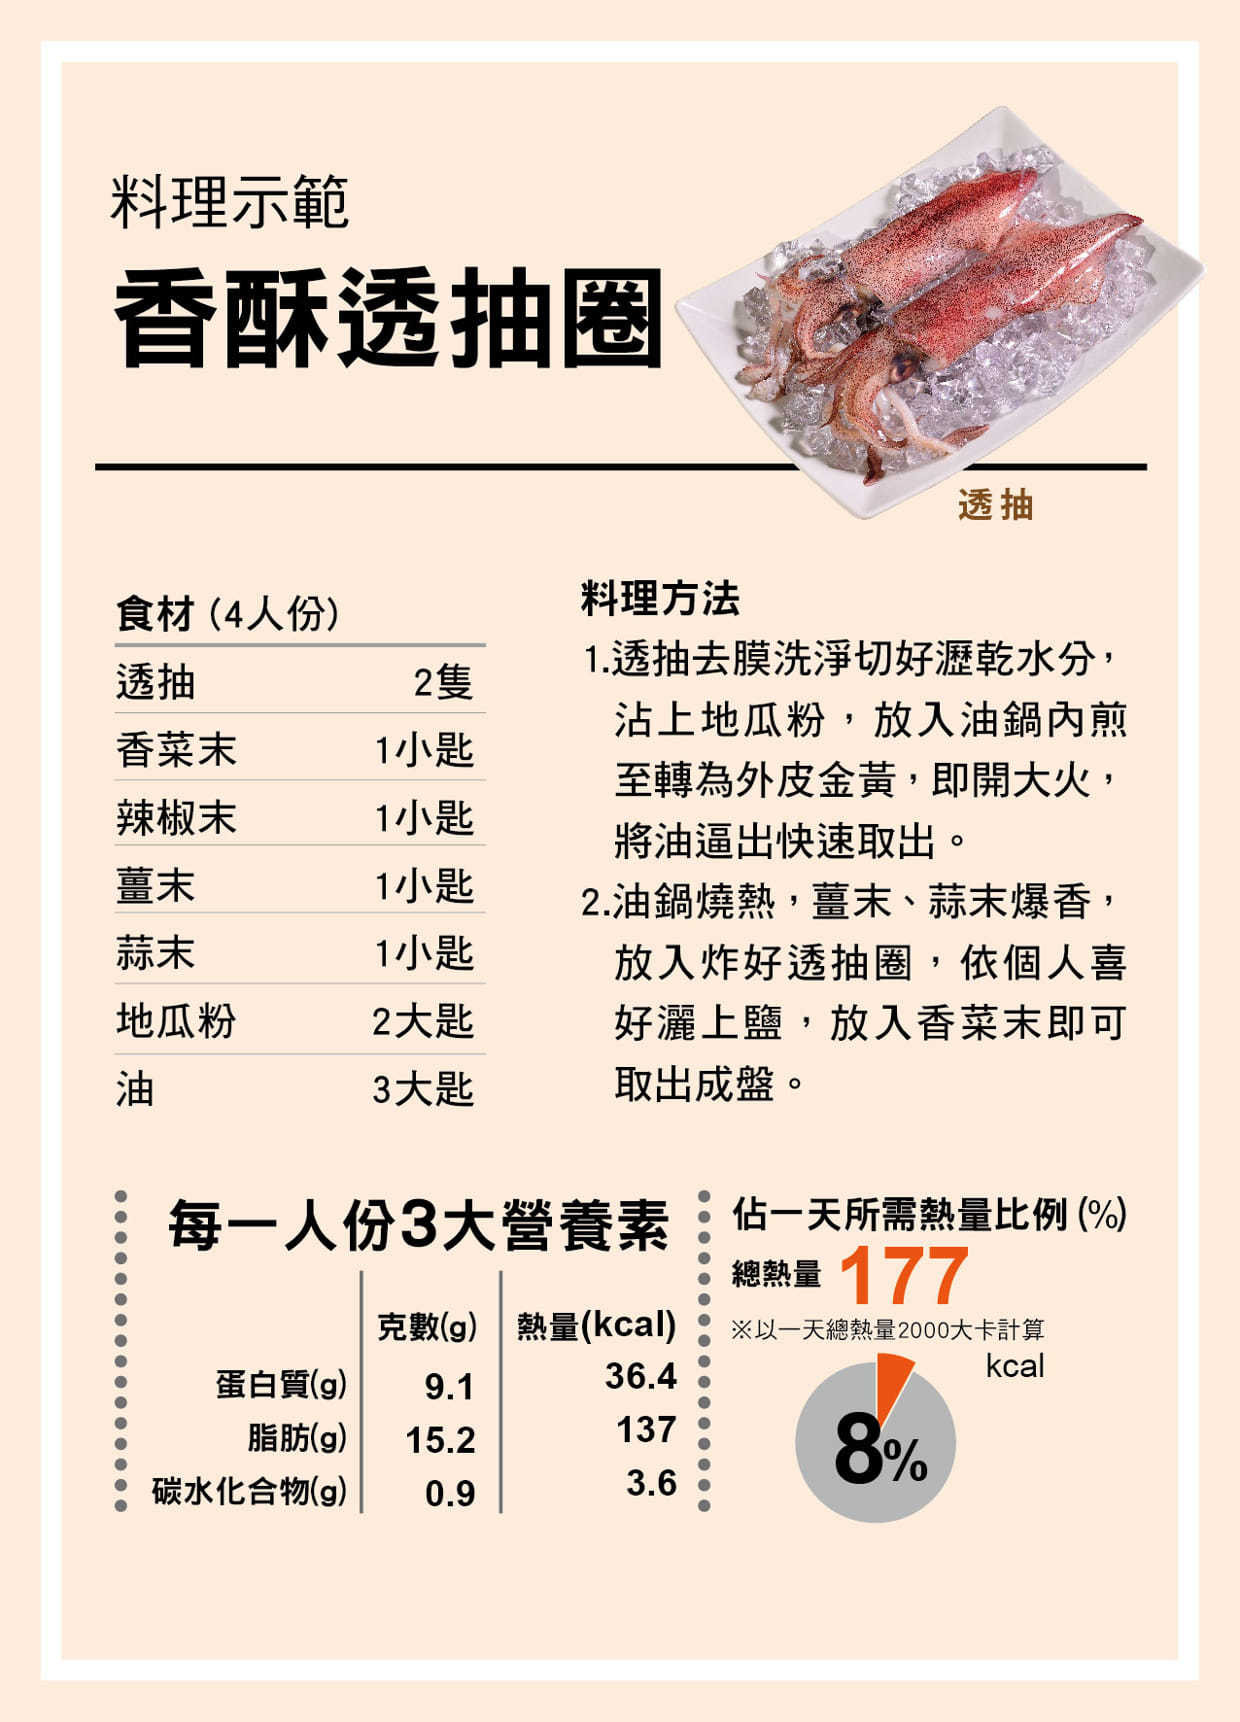 鮭魚茶泡飯料理食譜-江醫師嚴格把關生鮮食材，追求零污染！-江醫師健康鋪子/魚鋪子